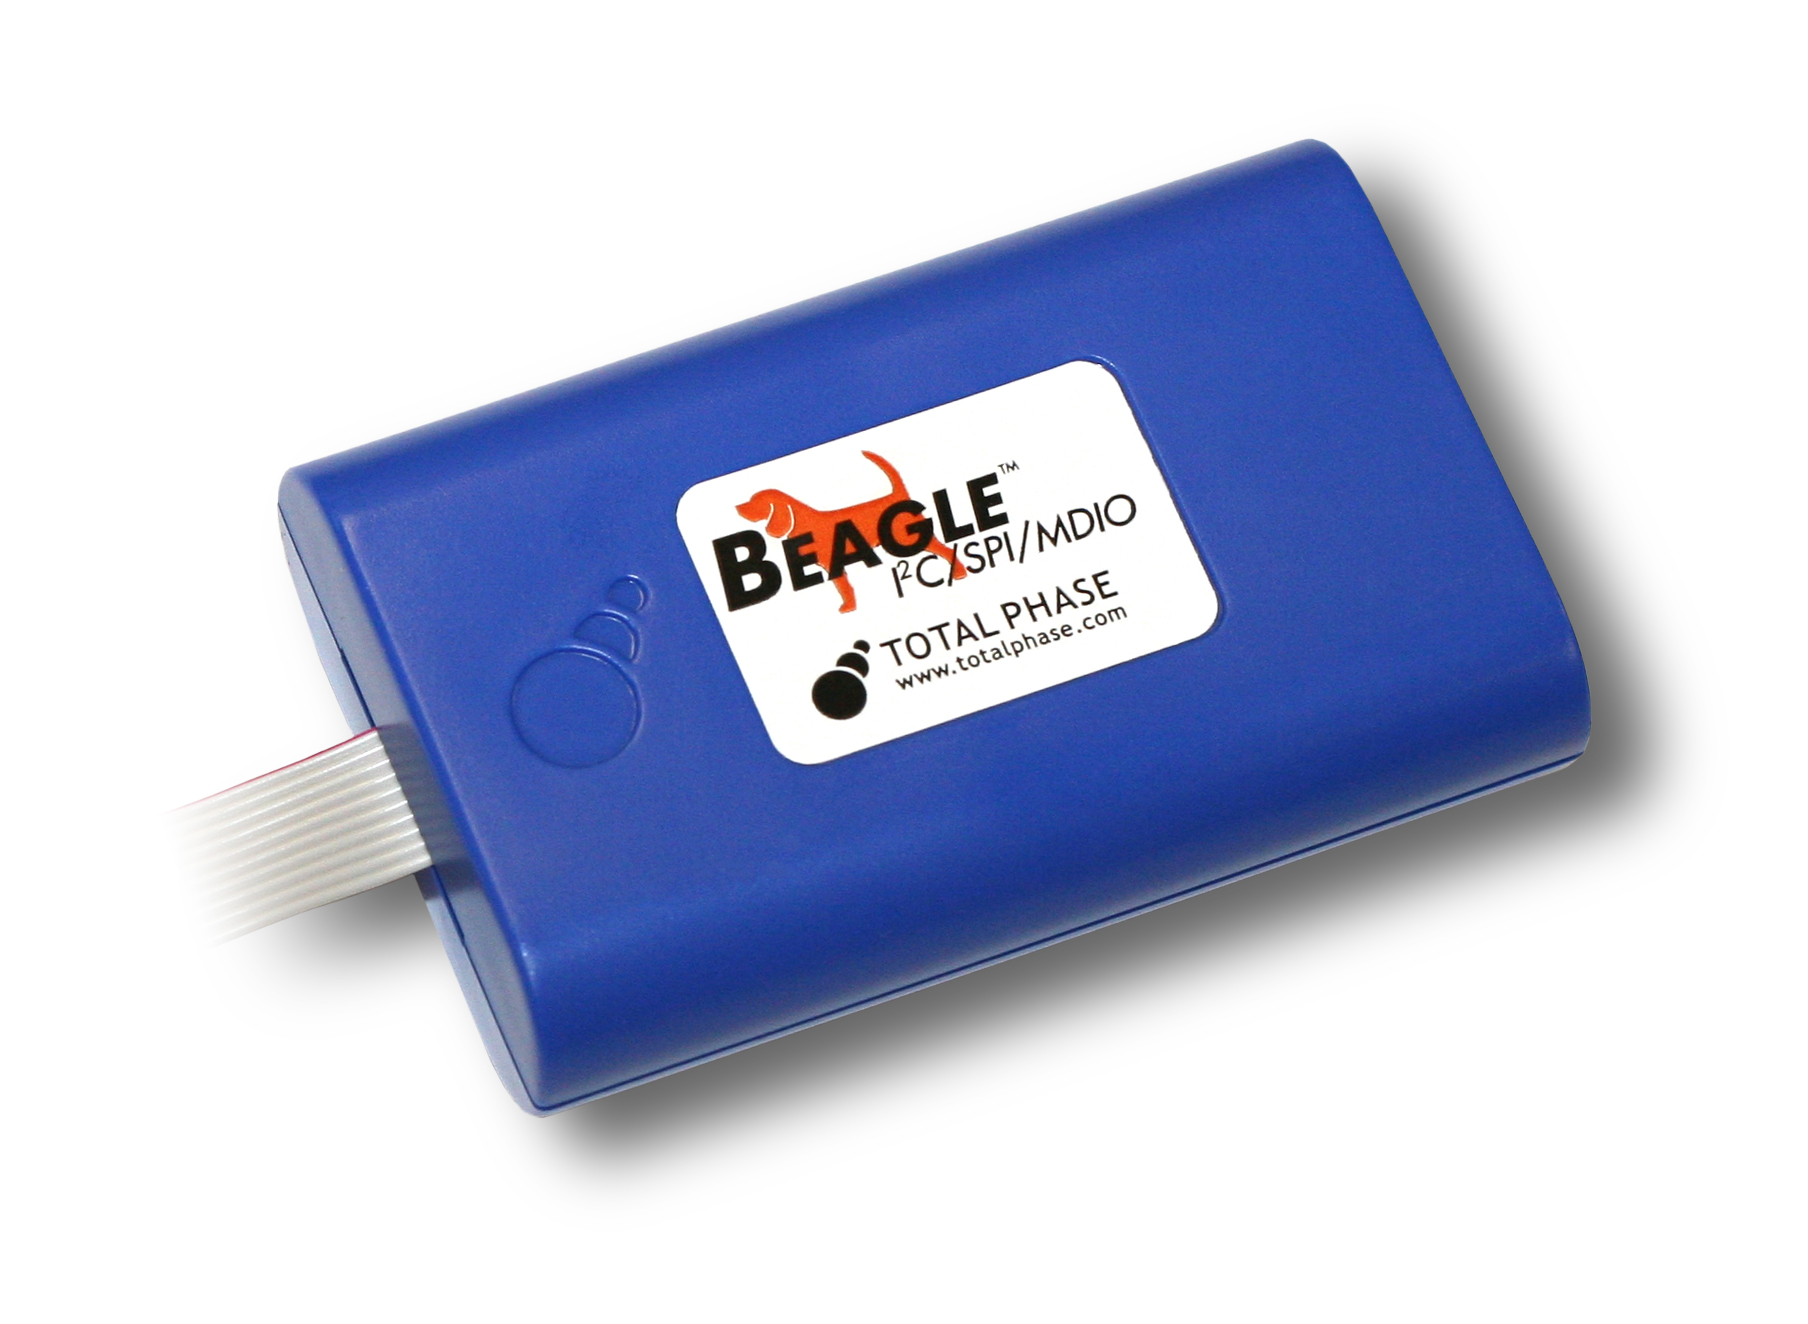 Spi host. Beagle USB 12 Protocol Analyzer. Beagle i2c/SPI Protocol Analyzer. Beagle USB 480 Power Protocol Analyzer- Ultimate. Анализатор протокола Beagle USB 12 что это.